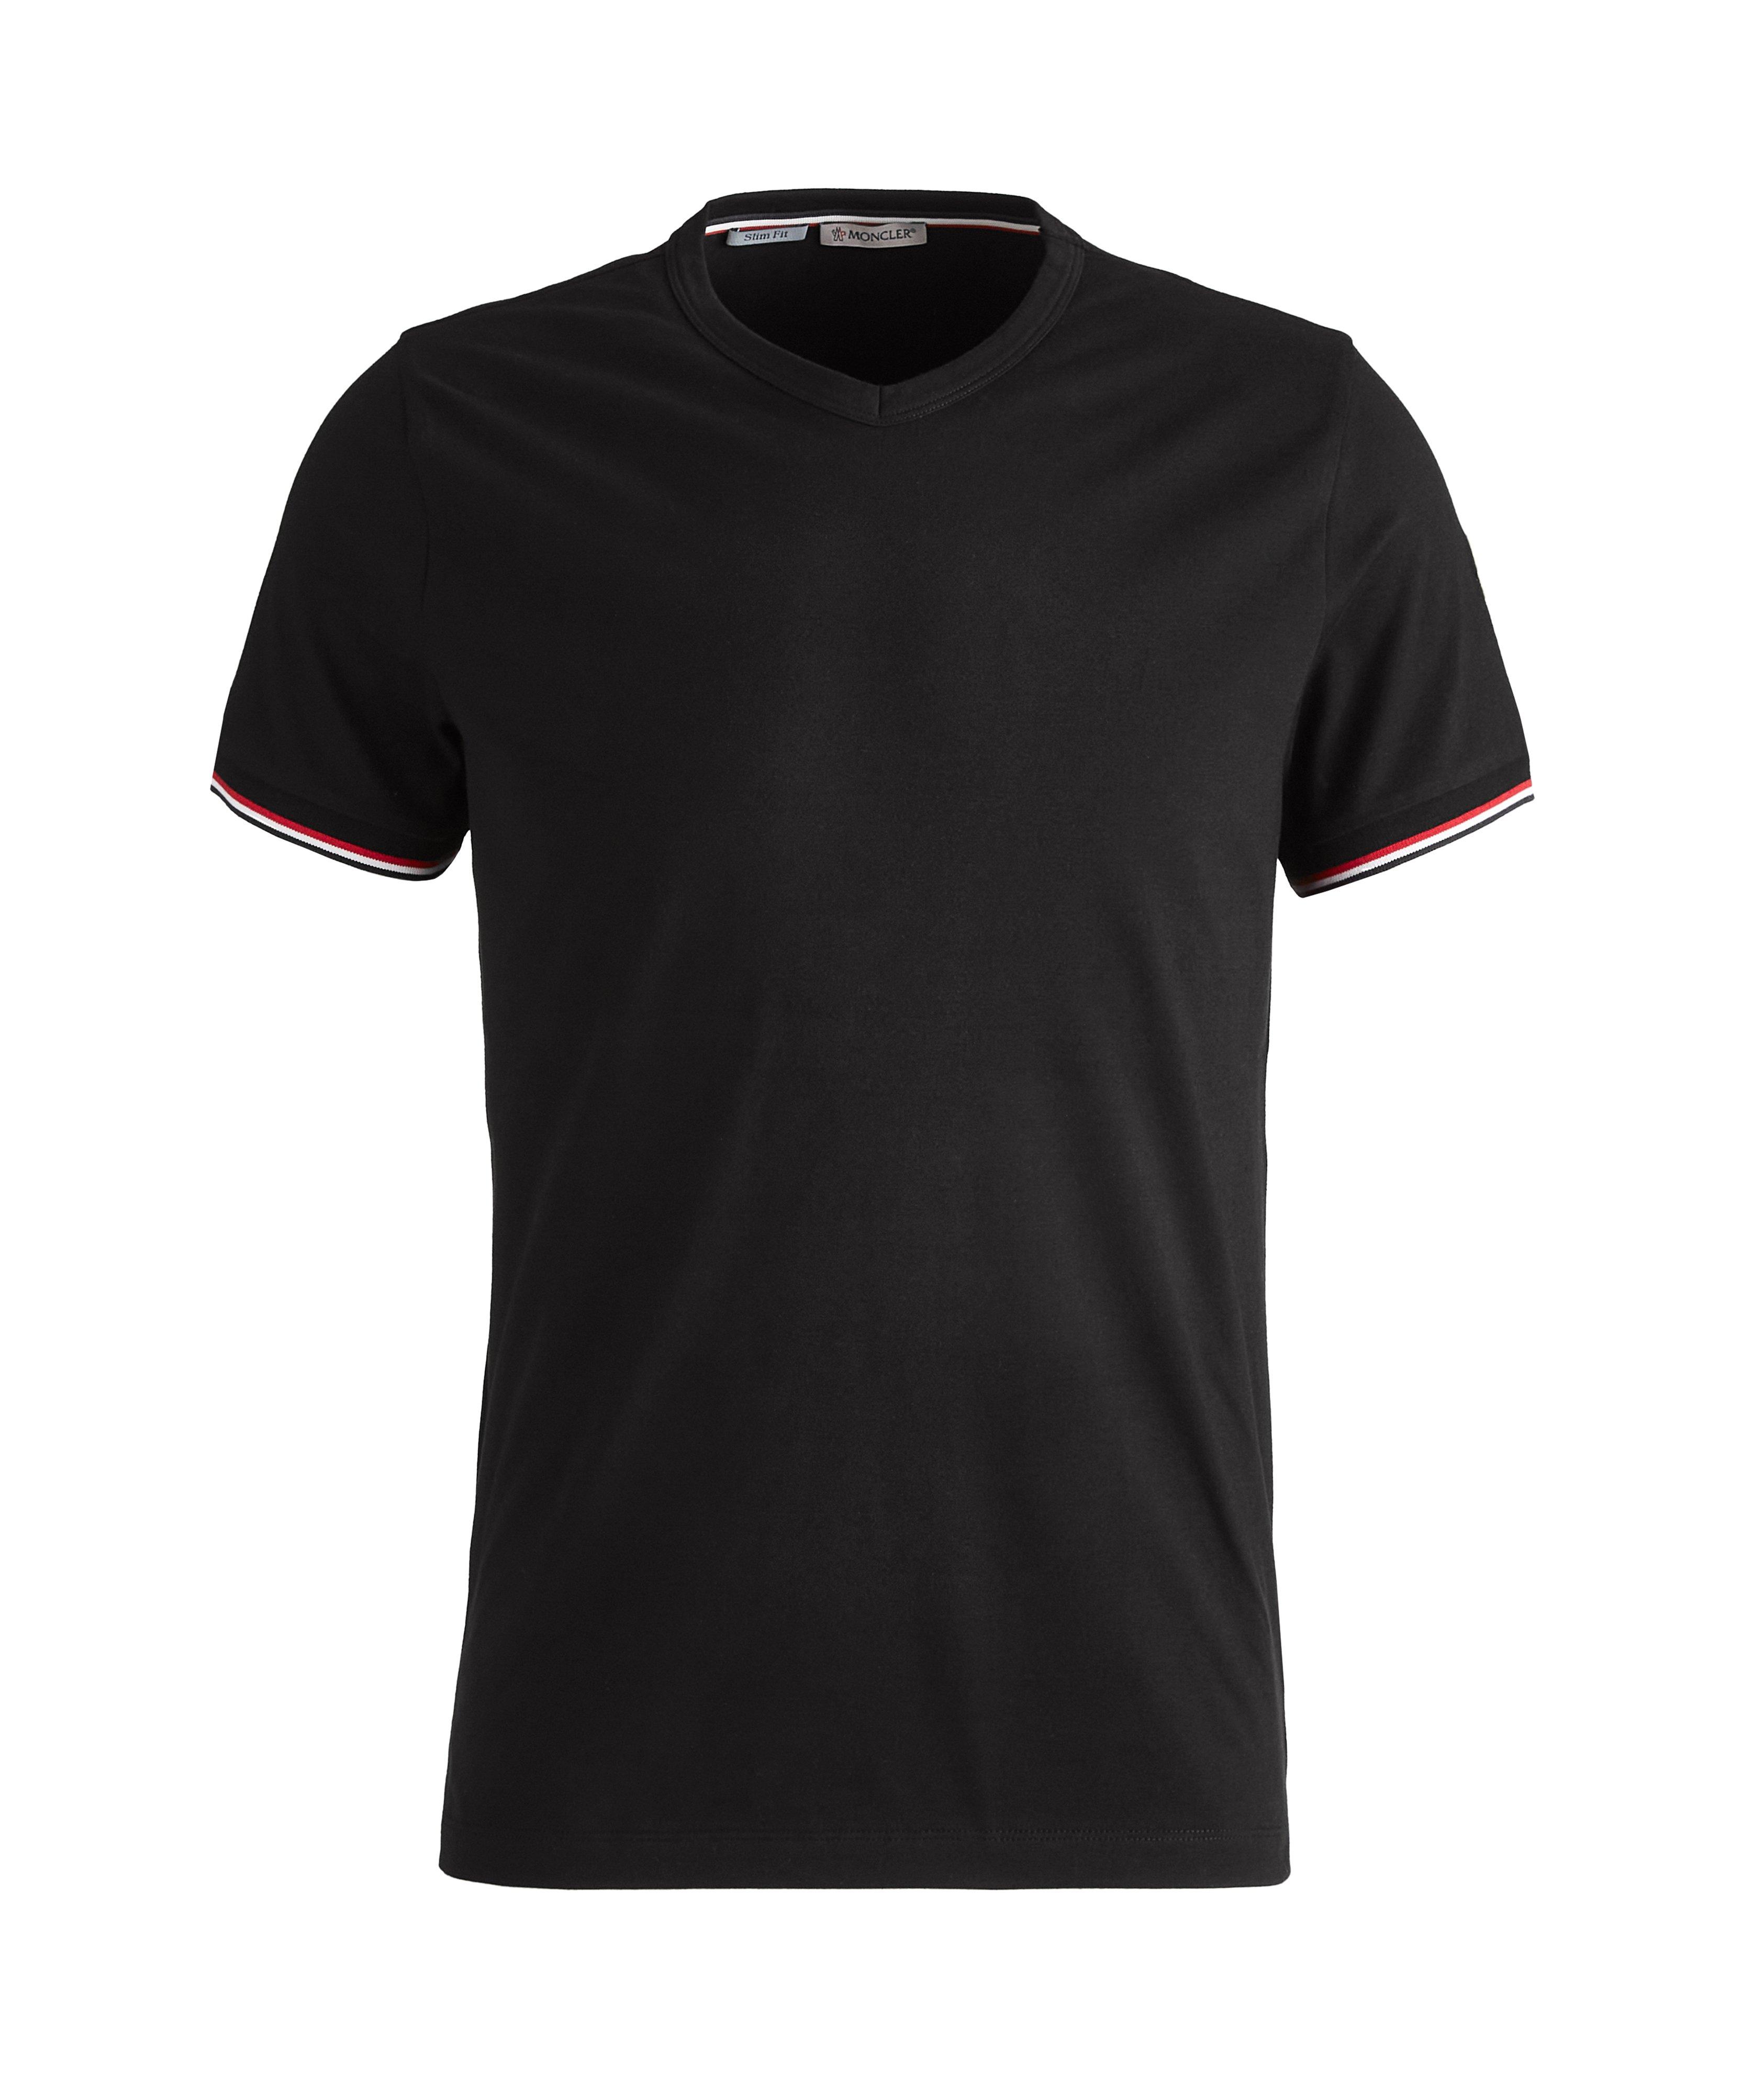 T-shirt Scollo en coton extensible à encolure en V image 0